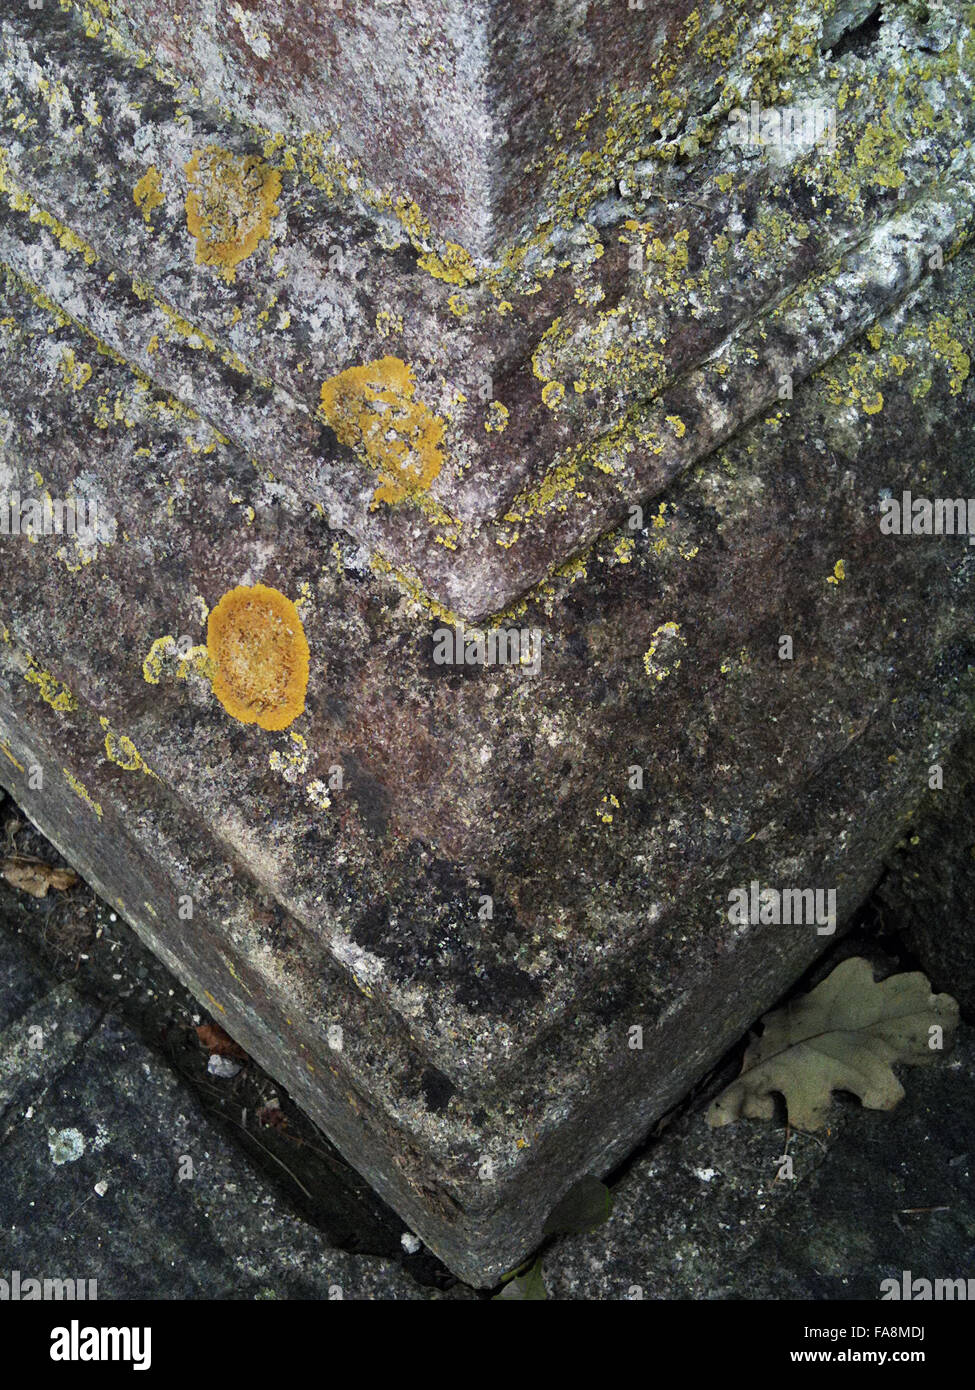 Lichen sur le pont palladien au paysage du parc Avant jardin, salle de bain, dans le Somerset. Image prise sur un i-phone, taille de fichier maximum 9MB. Banque D'Images